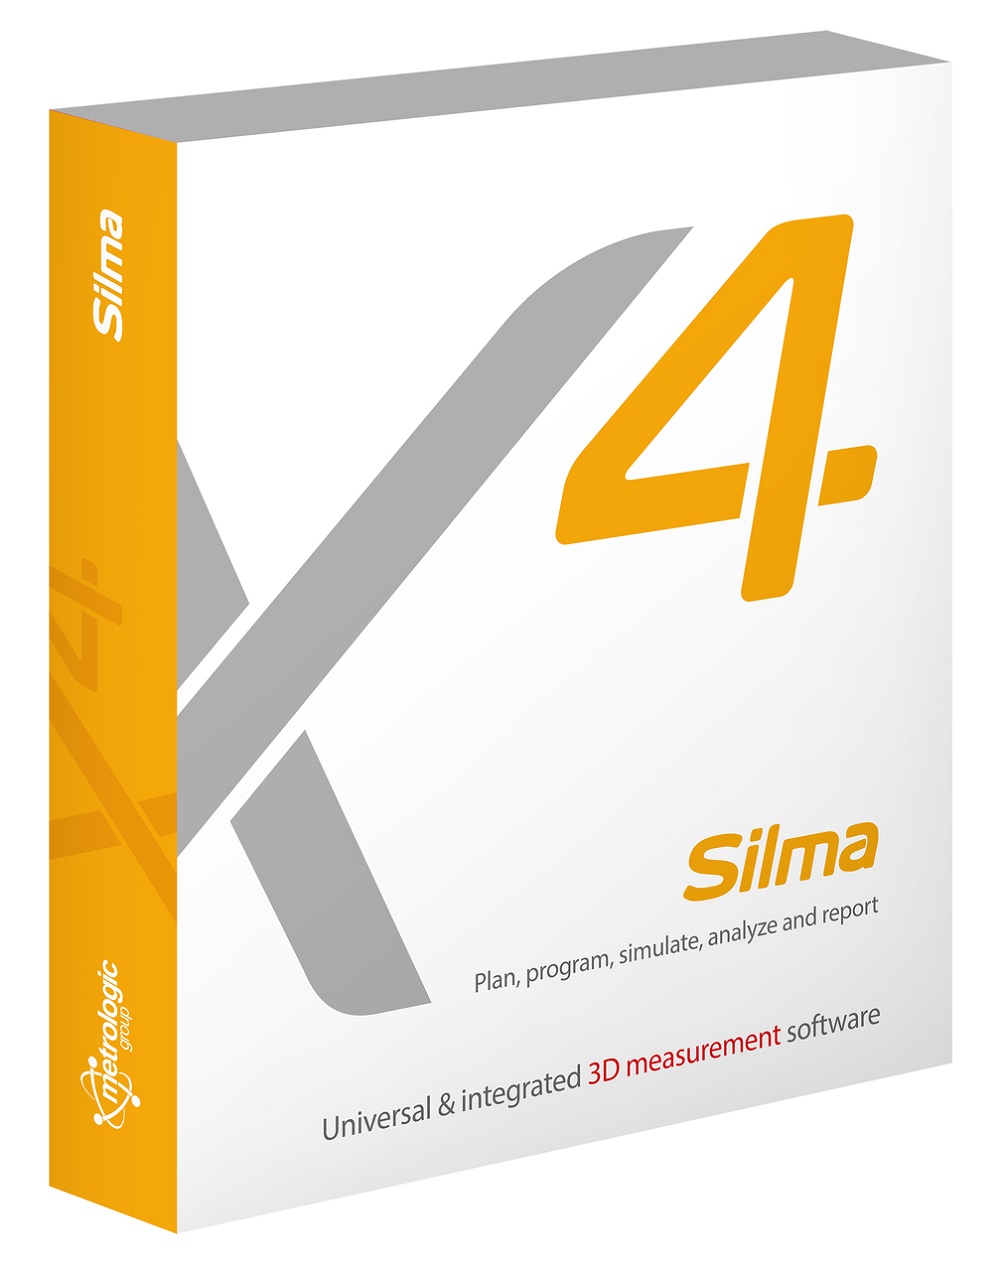 silmax4 - software inspecção dimensional - programação offline - metrologia industrial - controlo e inspecção dimensional - s4metro